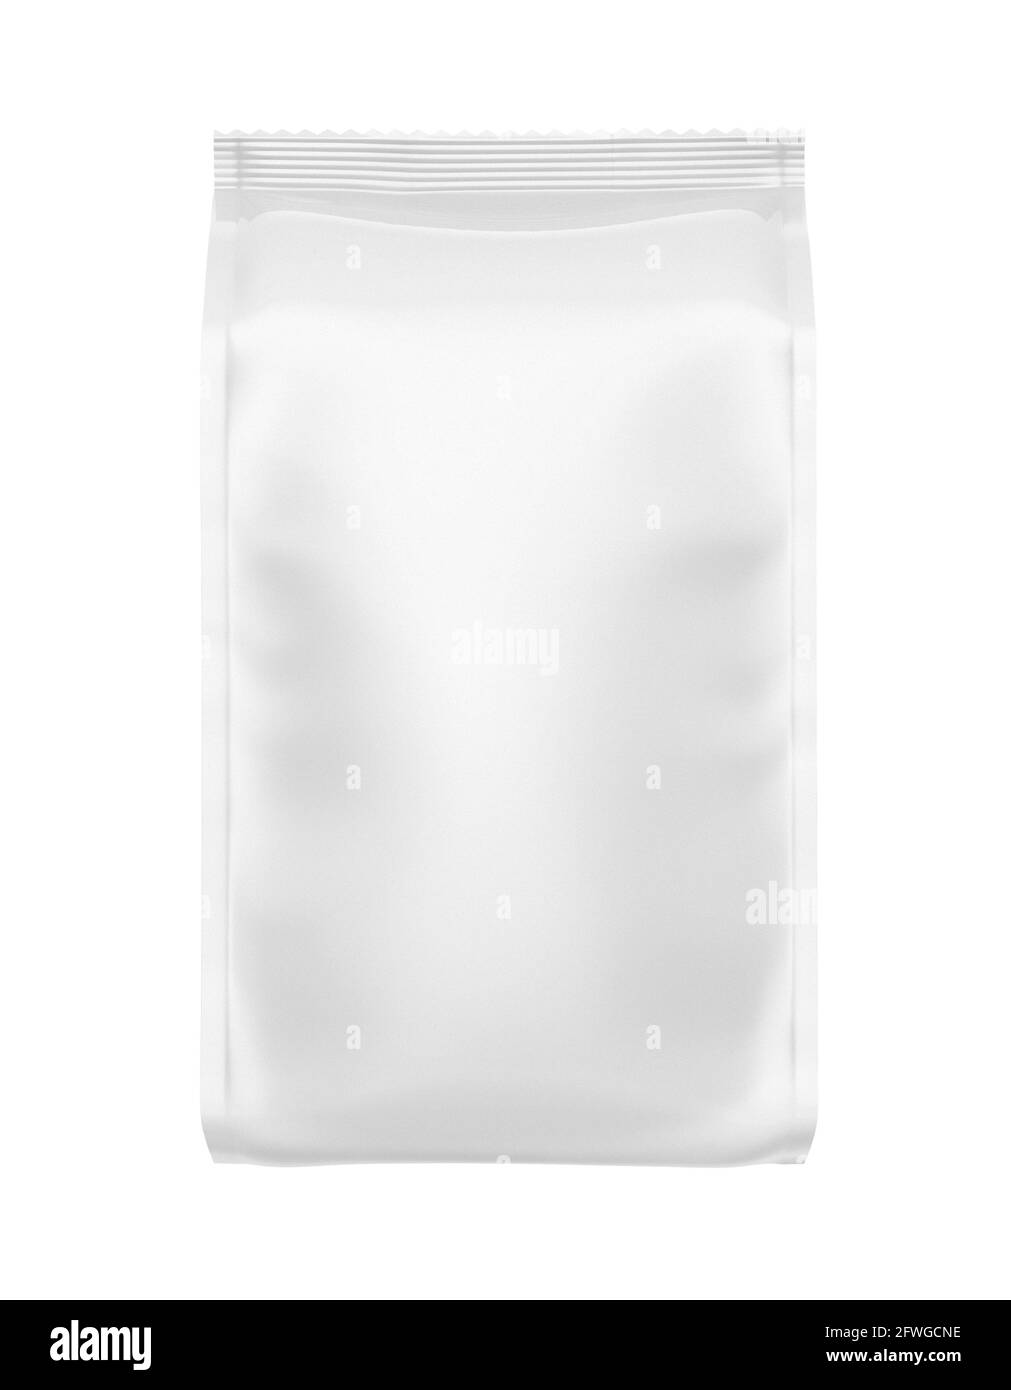 Sacchetto per alimenti in foglio bianco isolato su sfondo bianco, vista frontale con confezione senza marchio Foto Stock